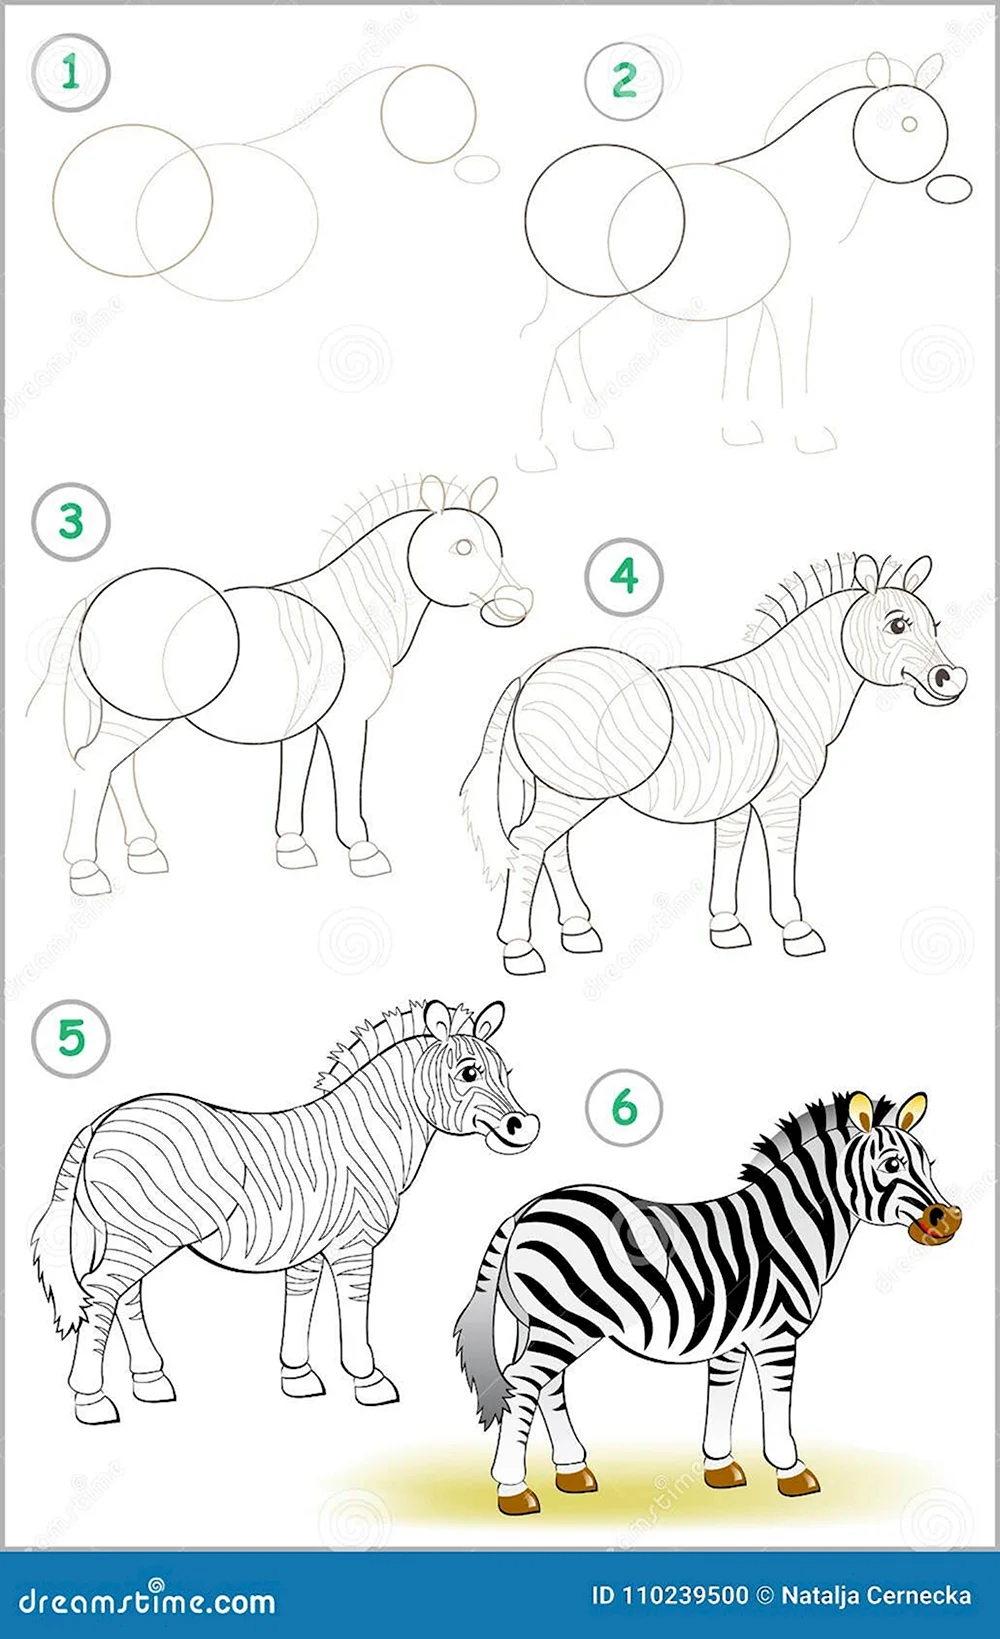 Как научиться рисовать зебру